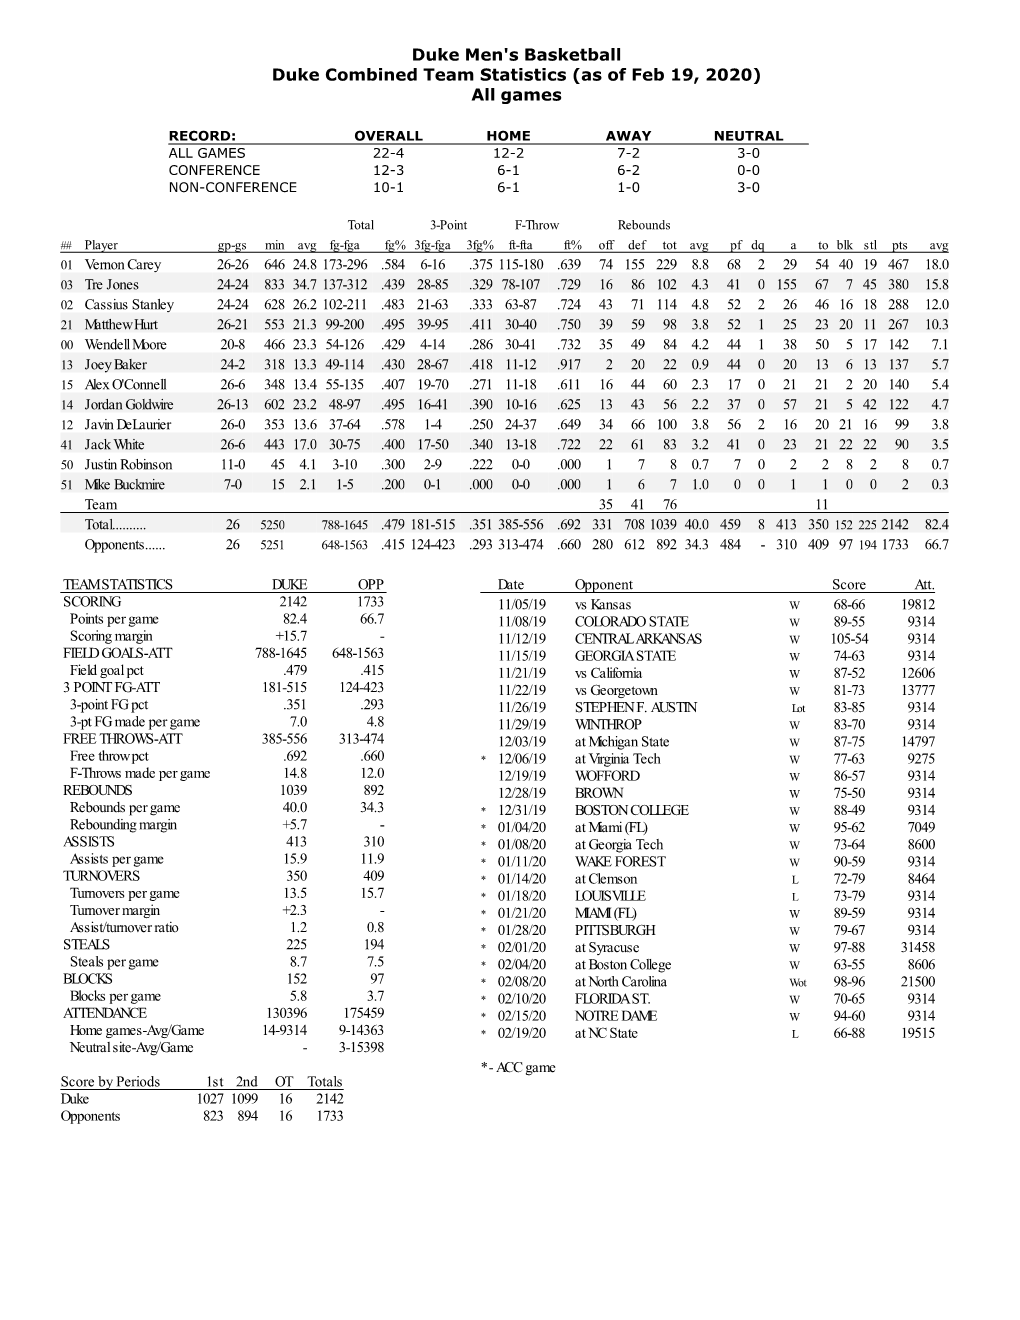 Duke Men's Basketball Duke Combined Team Statistics (As of Feb 19, 2020) All Games